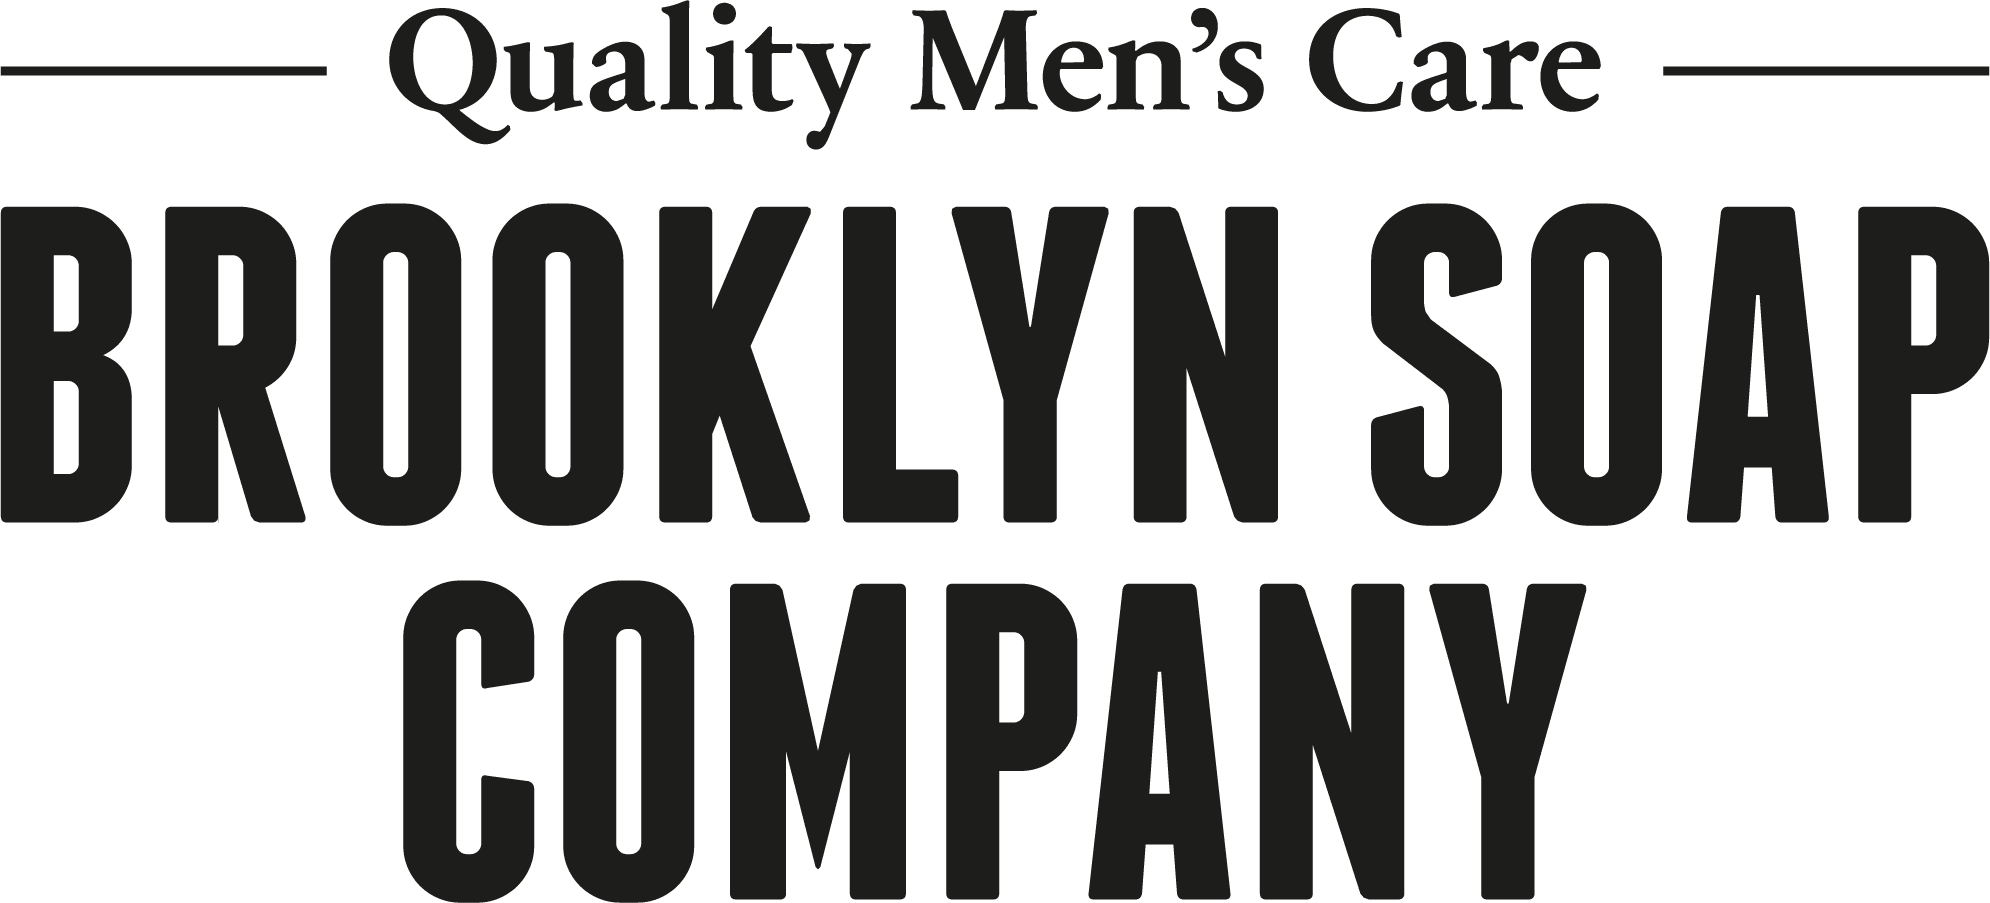 Brooklyn Soap Company